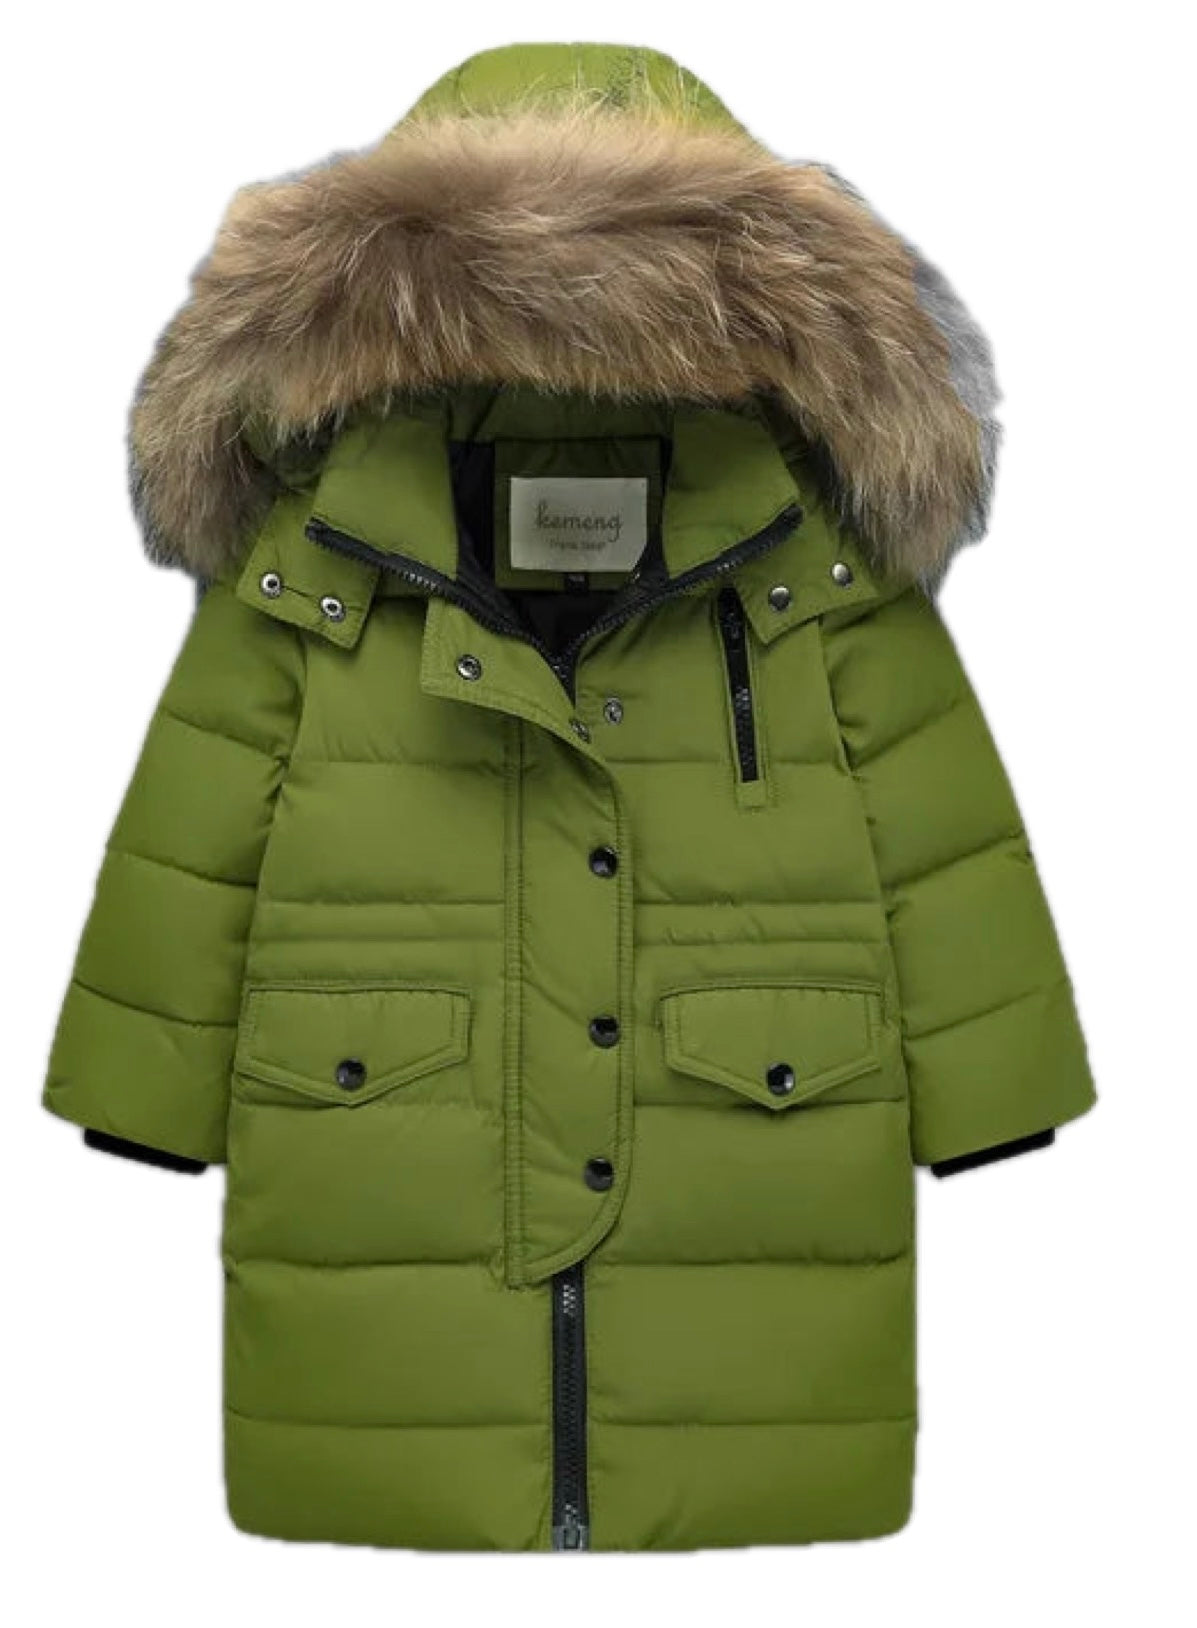 Boys Green Winter Coat Faux Fur Hood